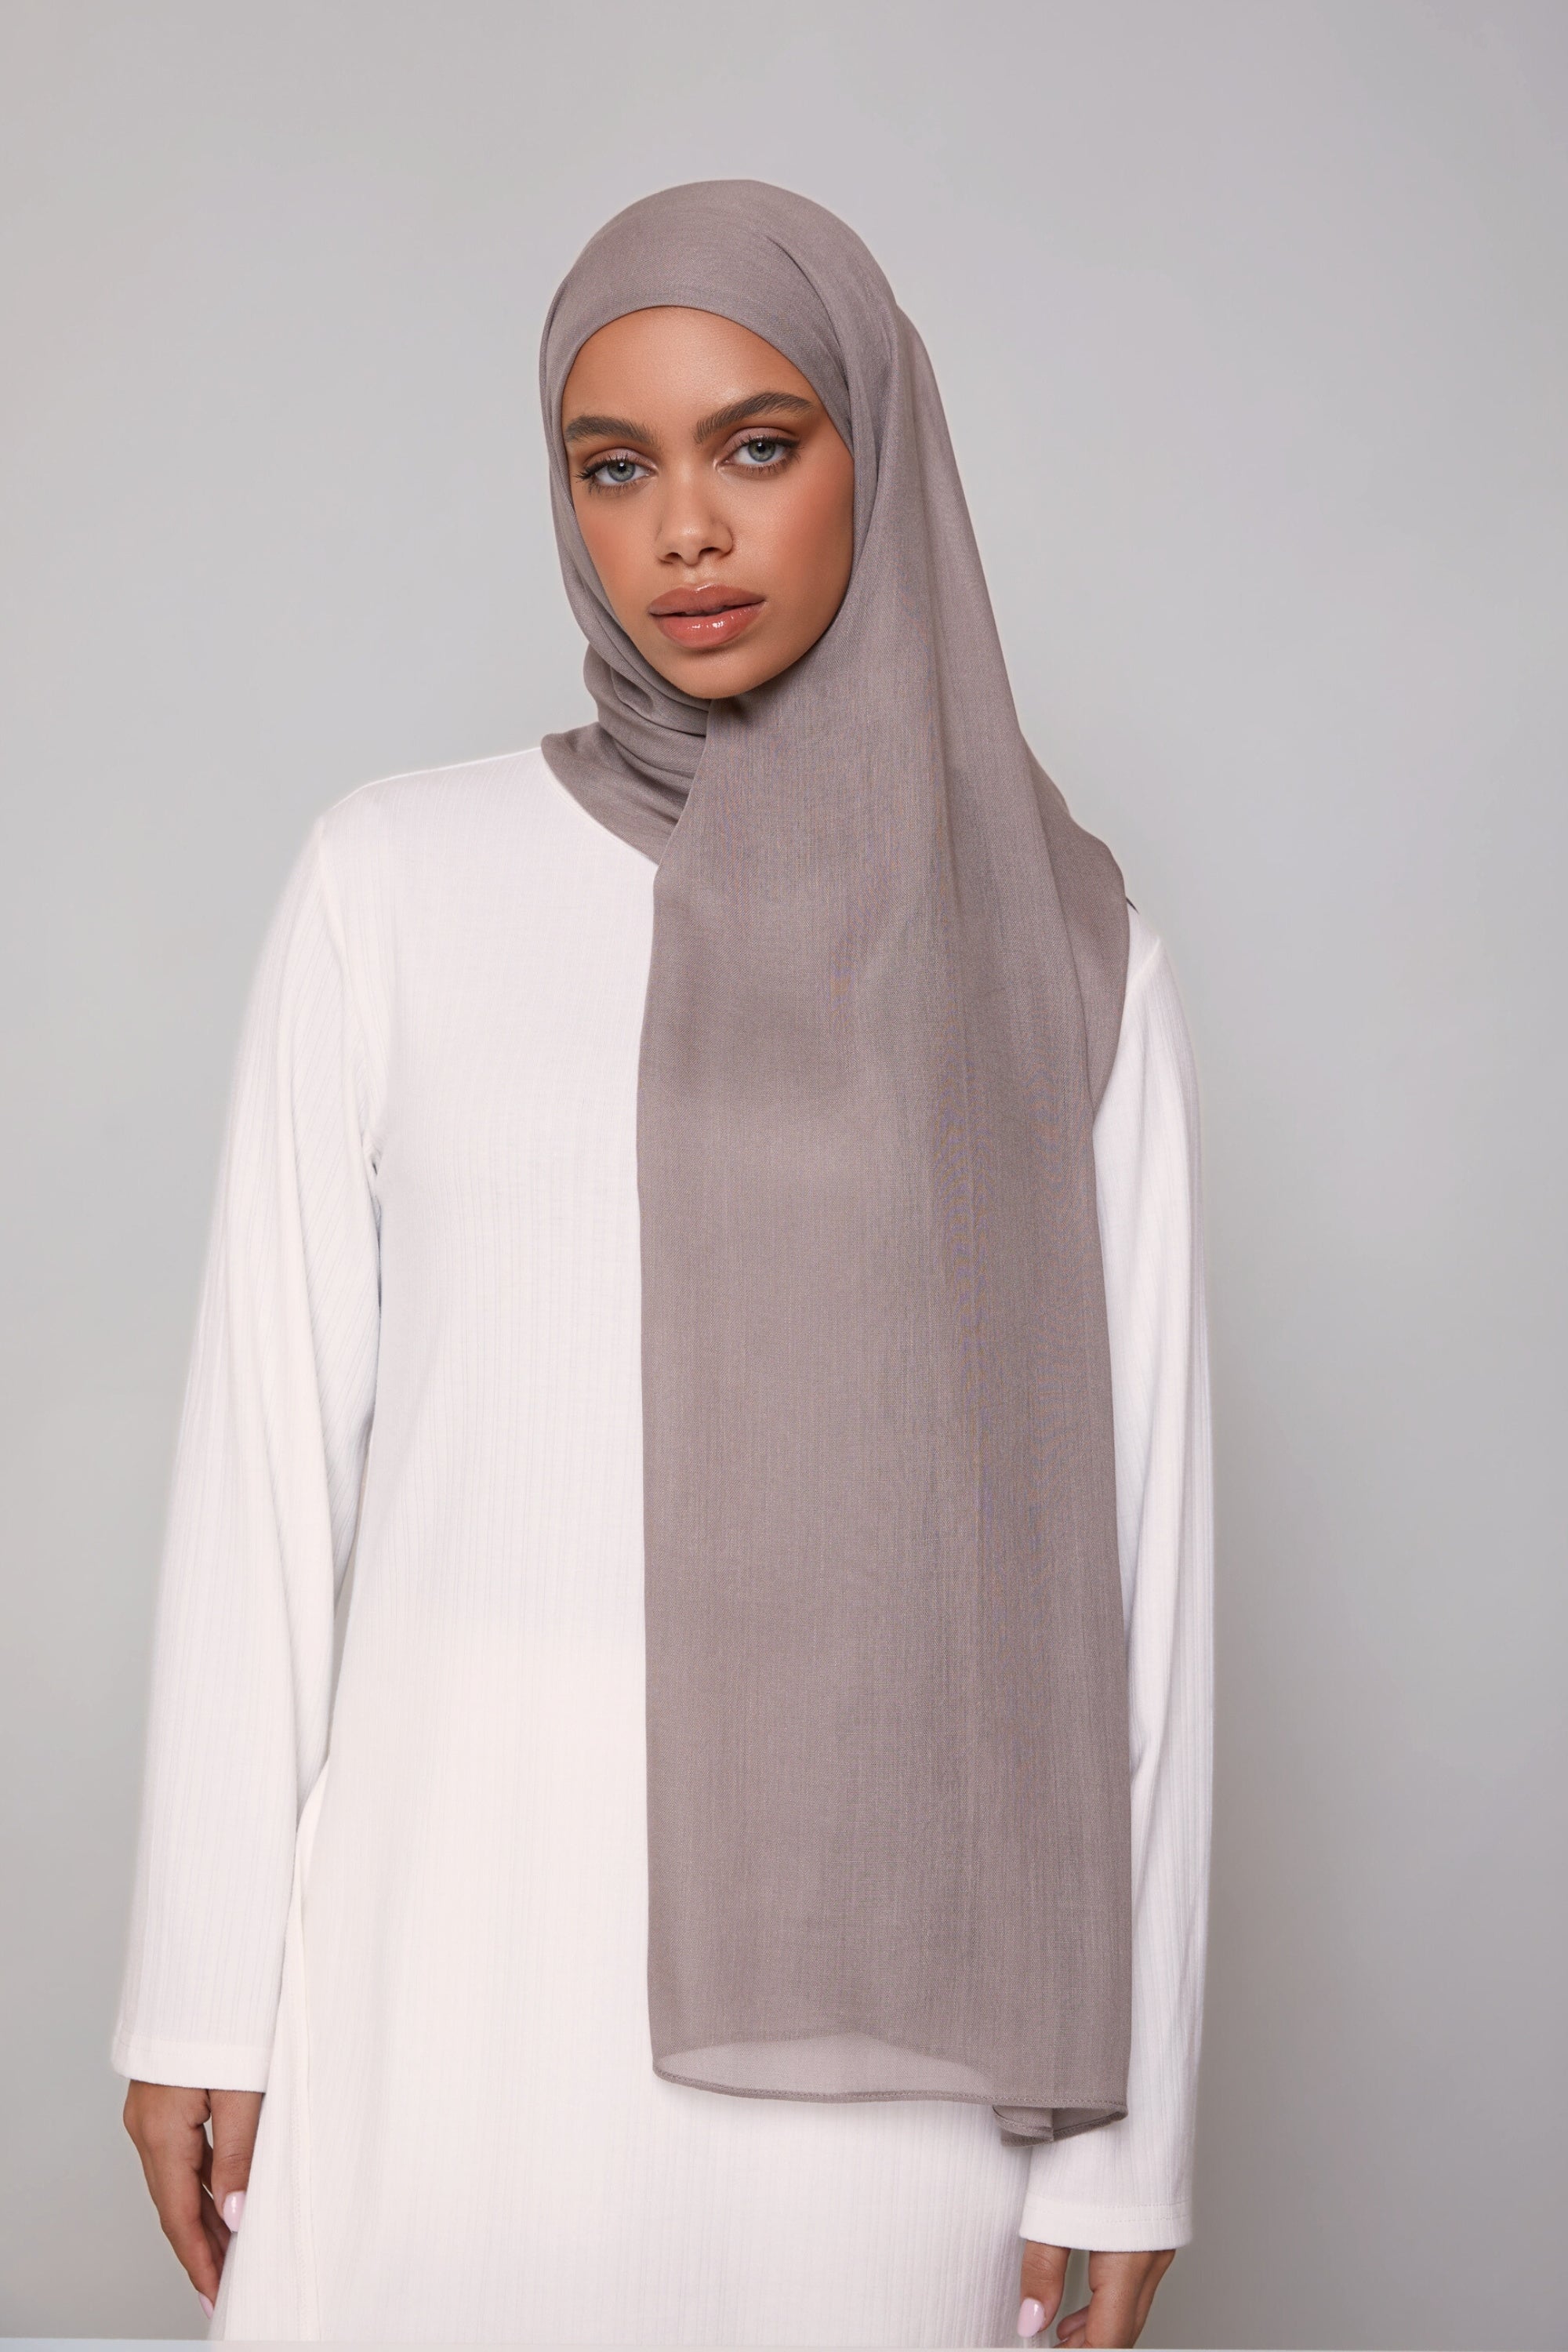 Modal Hijab - Pebble Veiled 